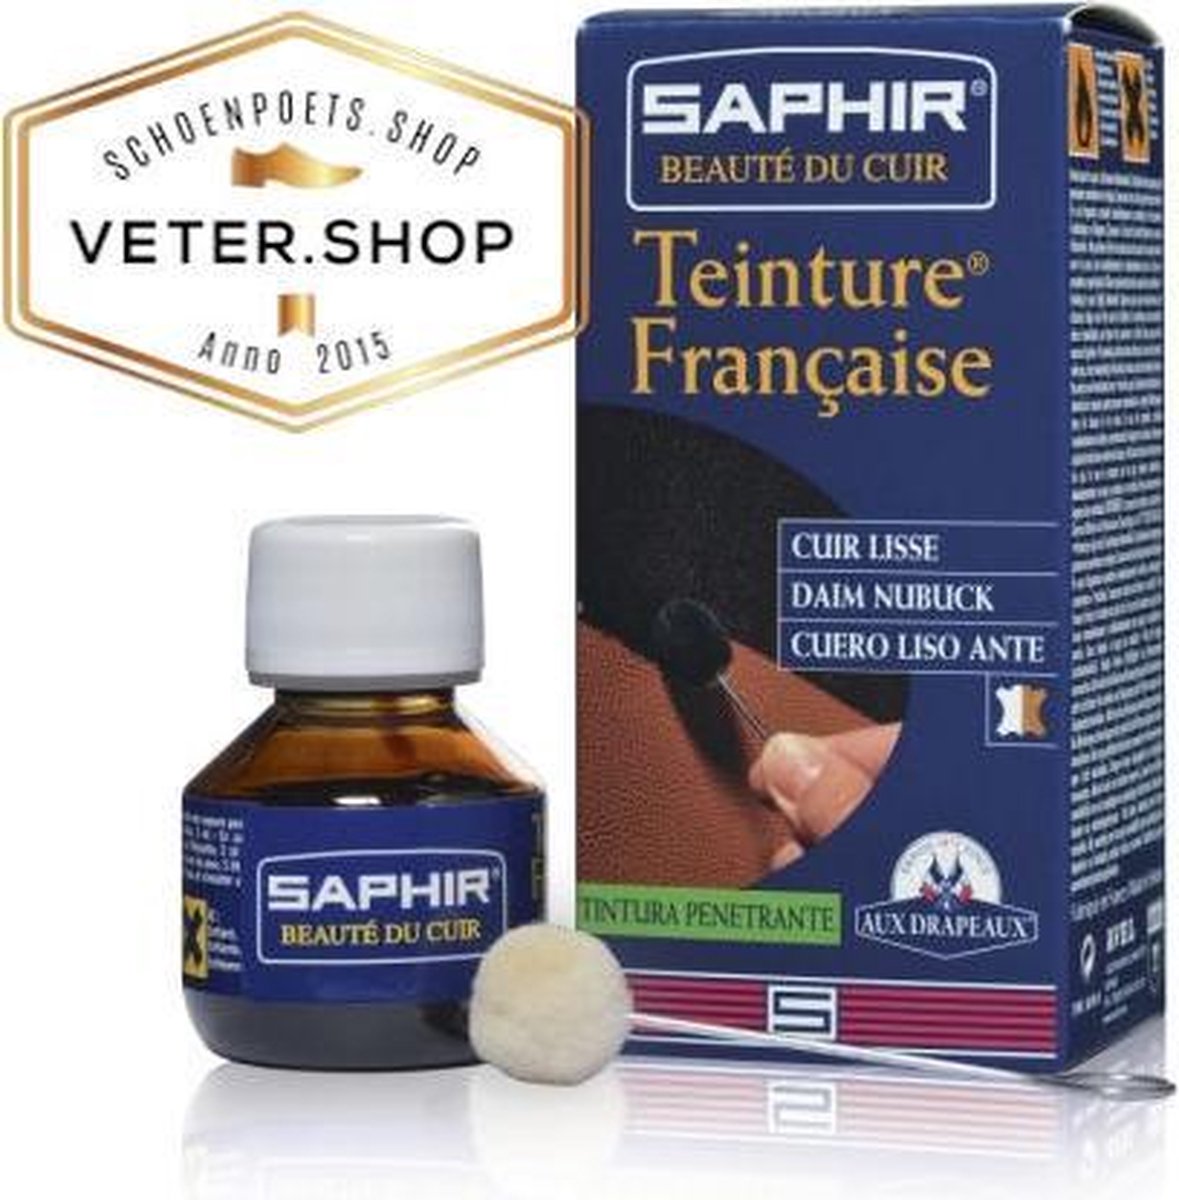 Saphir Teinture Francaise - Lederverf French Dye - 500 ml, Saphir 023 blauw